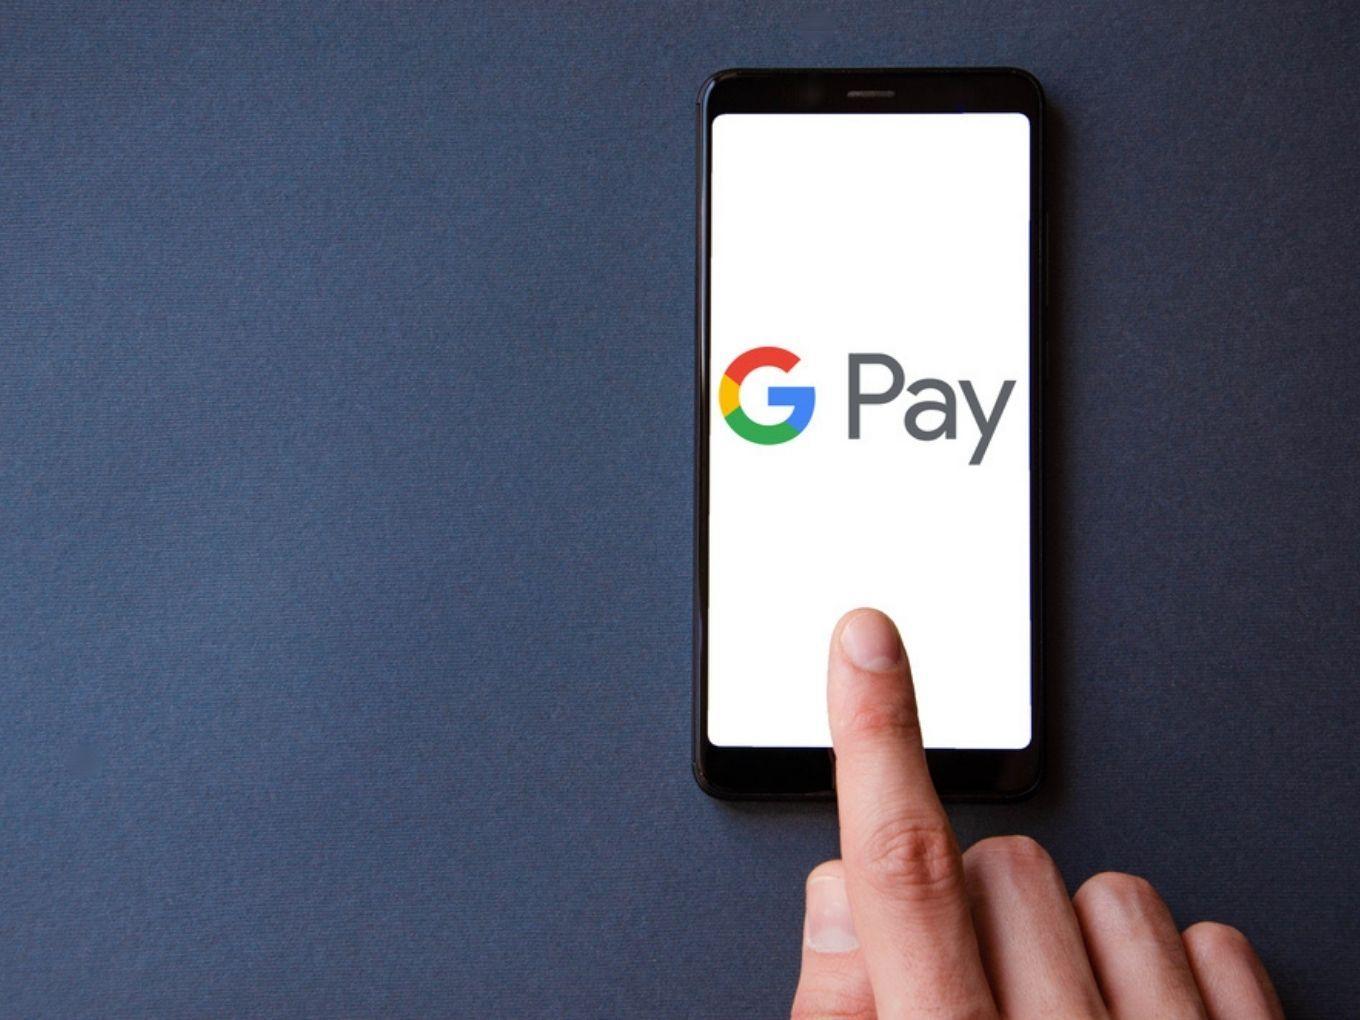 Google Pay users in US can now transfer money to India, Singapore|মার্কিন যুক্তরাষ্ট্রে গুগল পে ব্যবহারকারীরা এখন ভারত, সিঙ্গাপুরে অর্থ স্থানান্তর করতে পারবেন_20.1